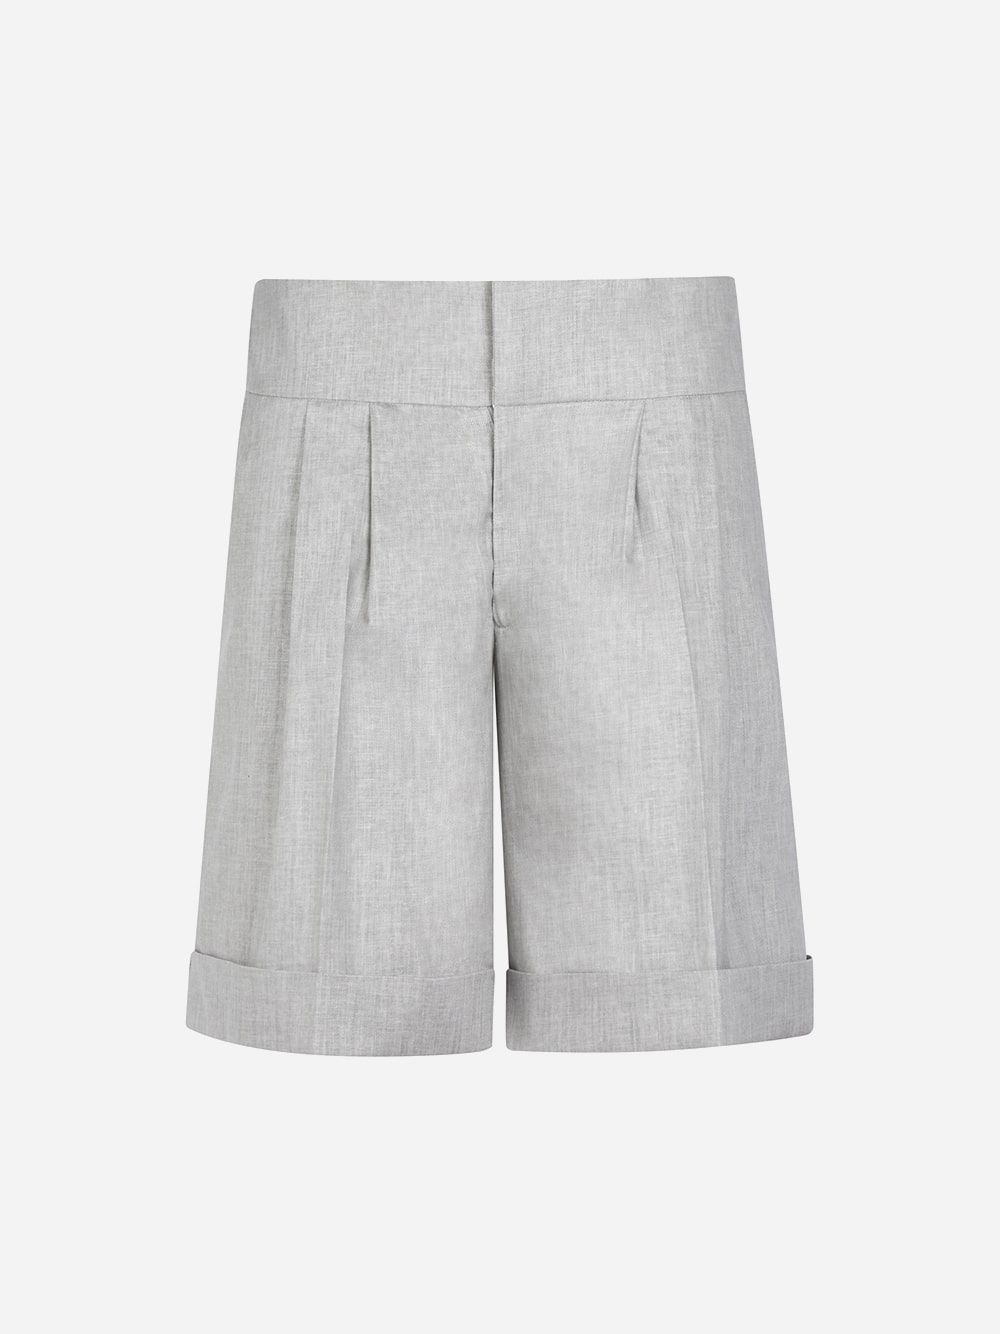 Grey Pleated Shorts | Diogo Miranda